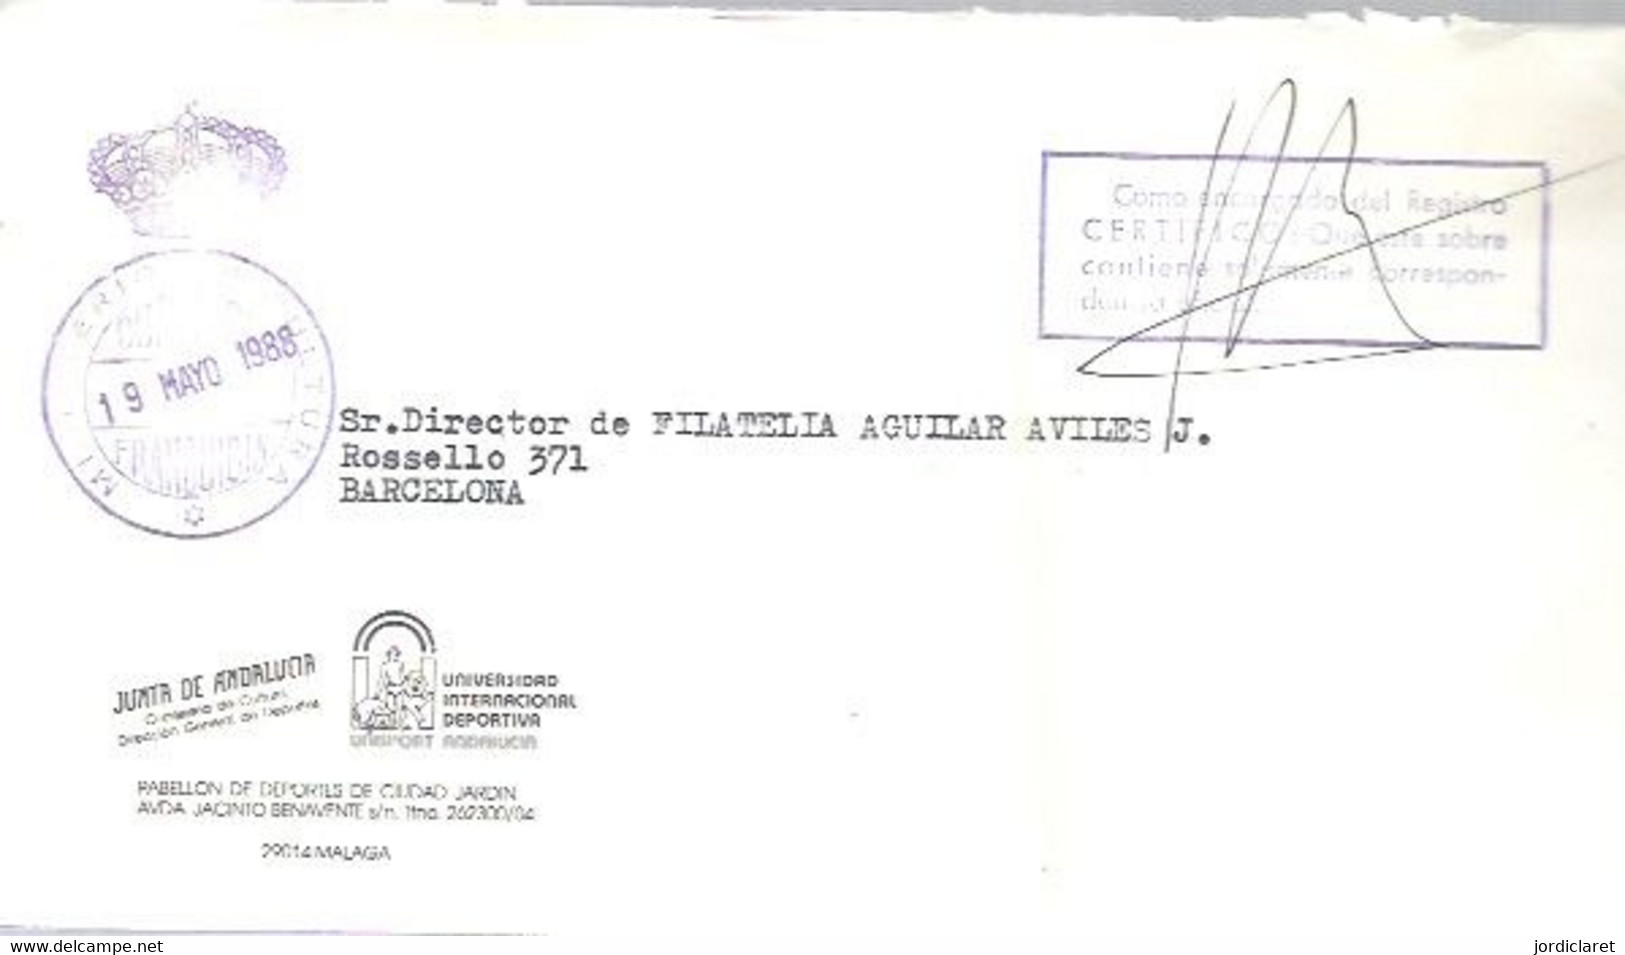 MINISTERIO DE CULTURA 1988 - Postage Free